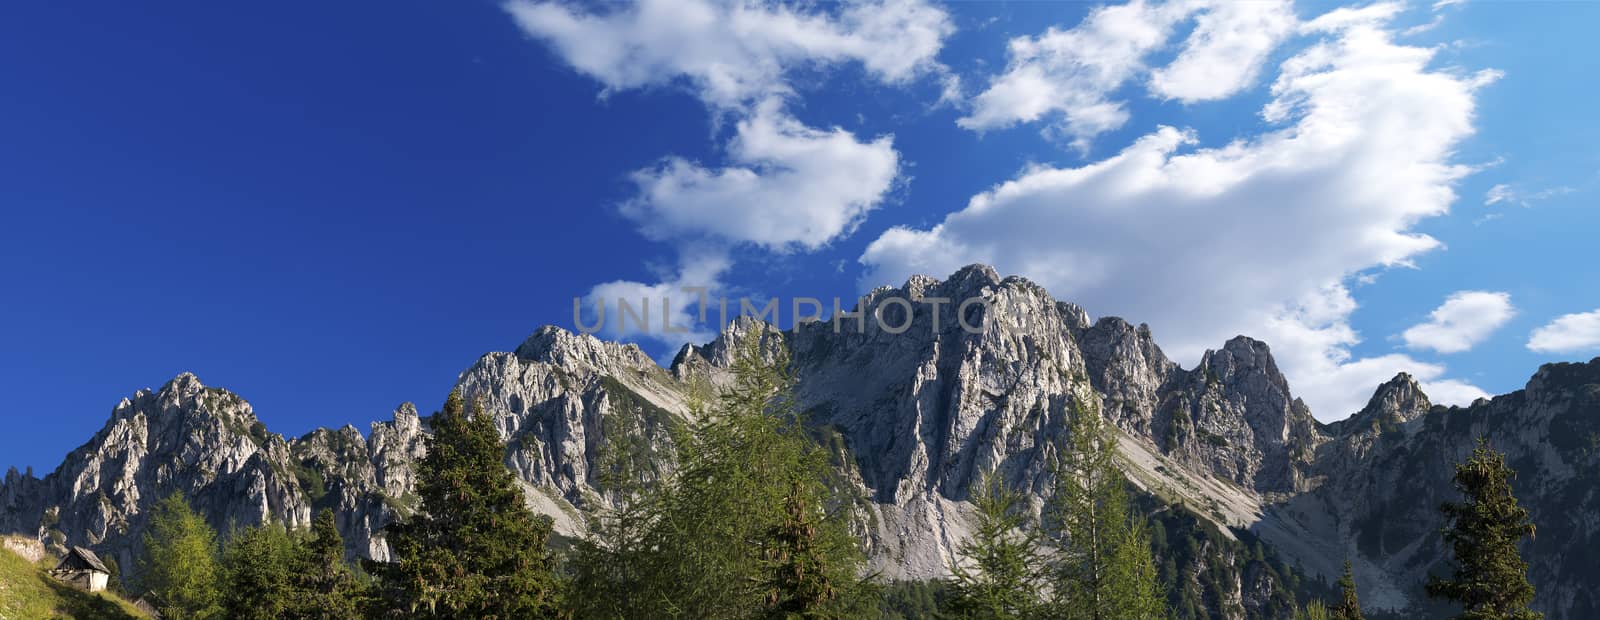 Cima del Cacciatore (Peak of the Hunter) in Julian Italian Alps. Tarvisio, Friuli Venezia Giulia, Italy